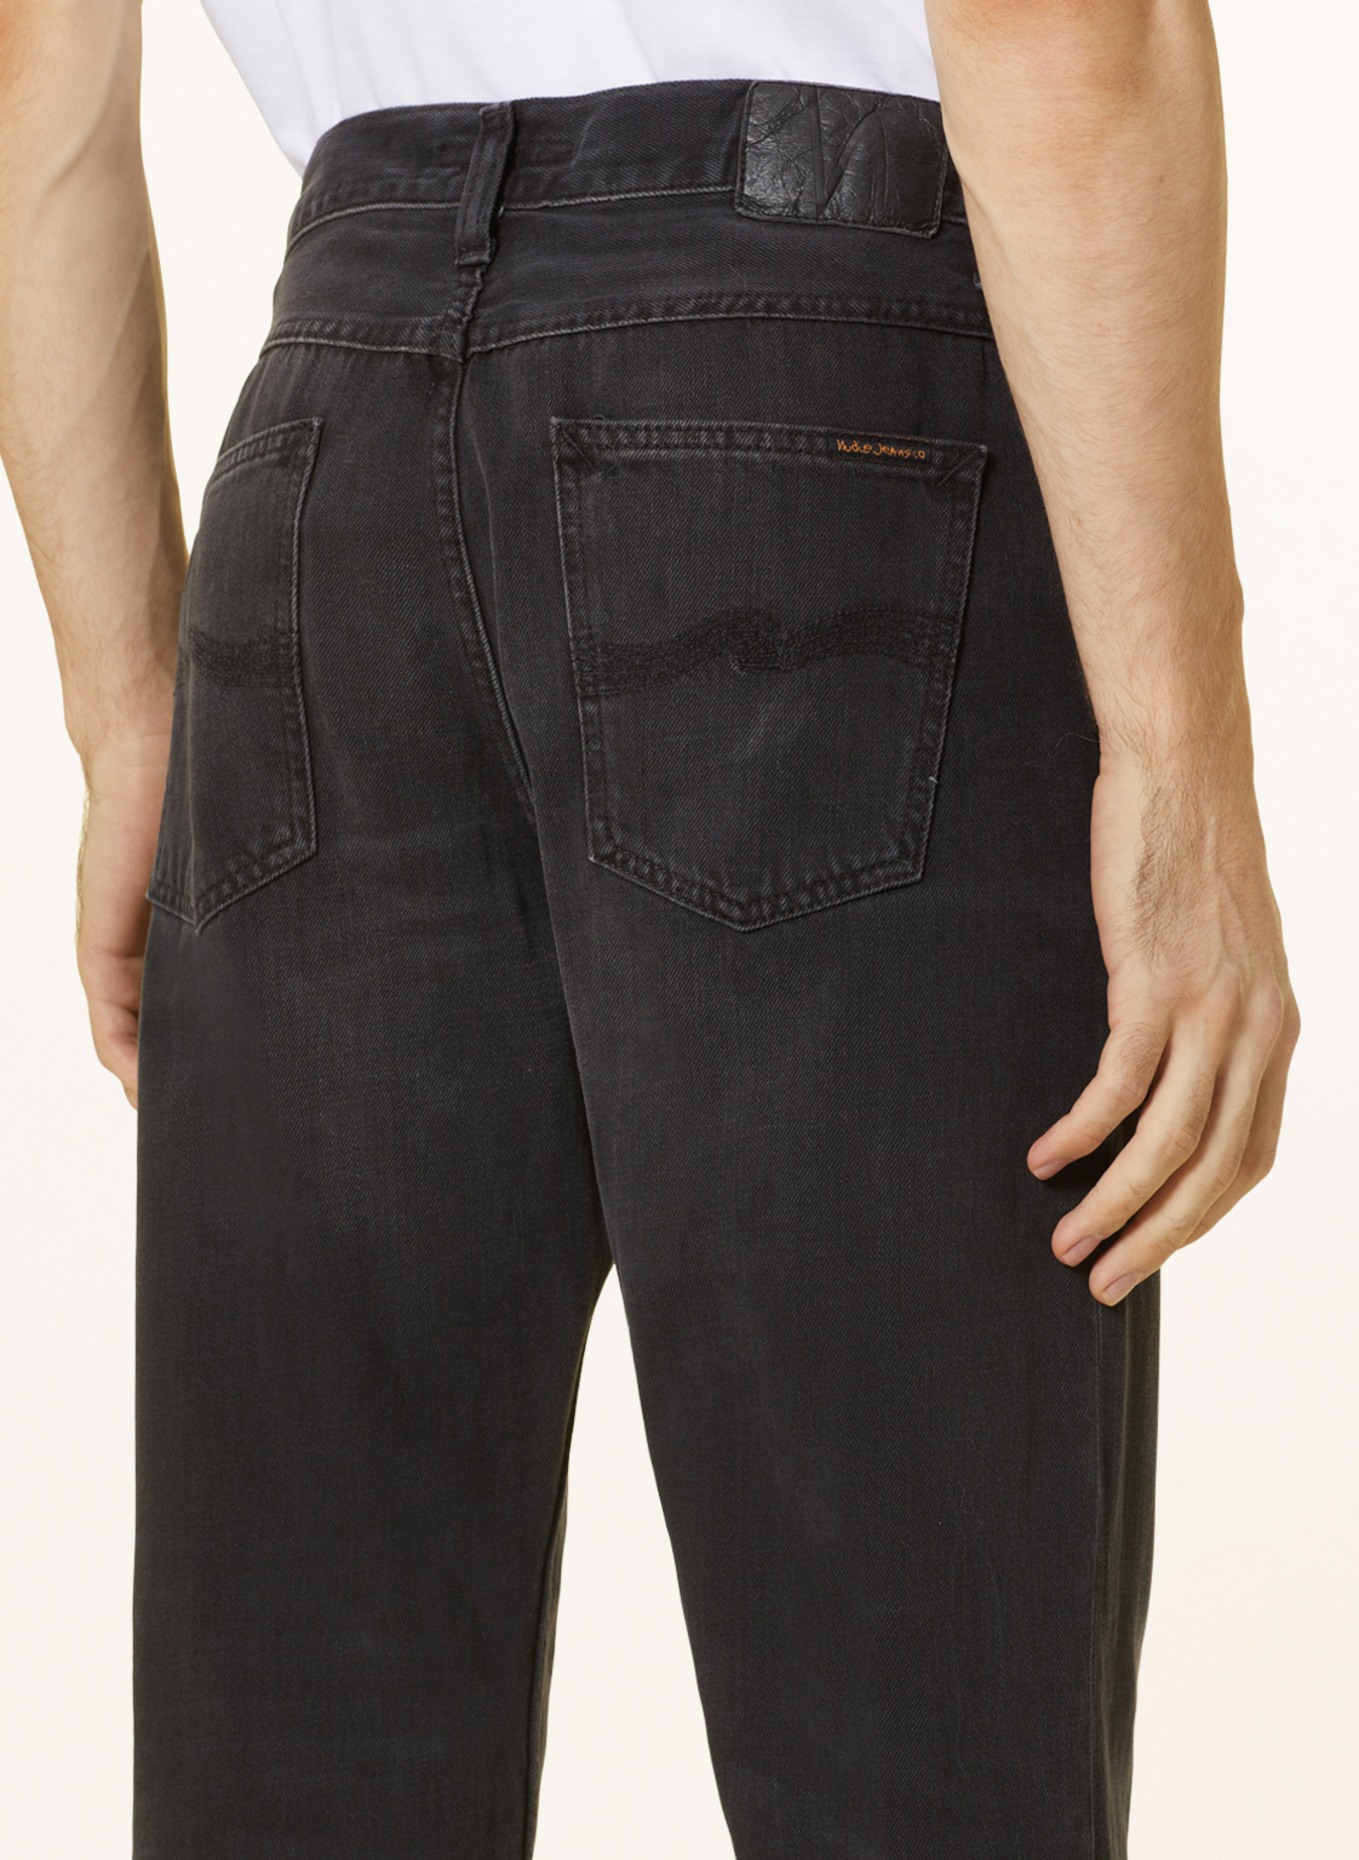 Nudie Jeans Jeans STEADY EDDIE II tapered fit, Color: Black Change (Image 6)